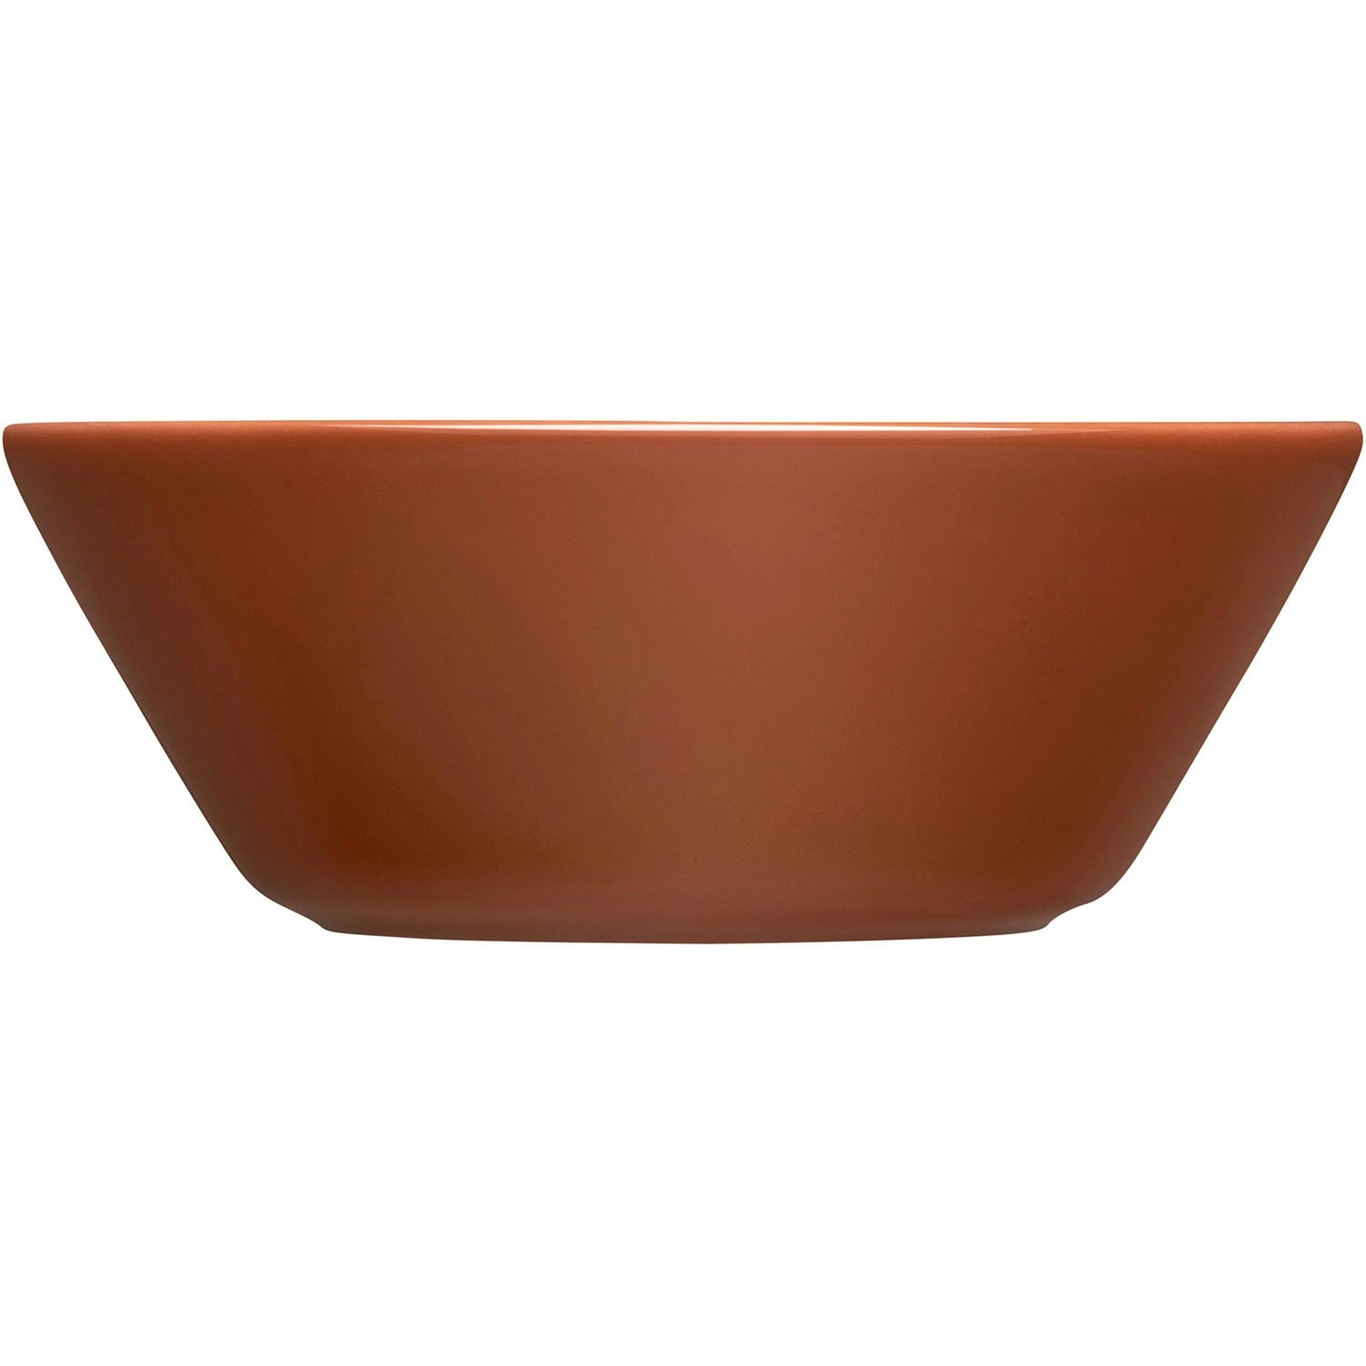 Teema Bowl 15 cm, Vintage Brown